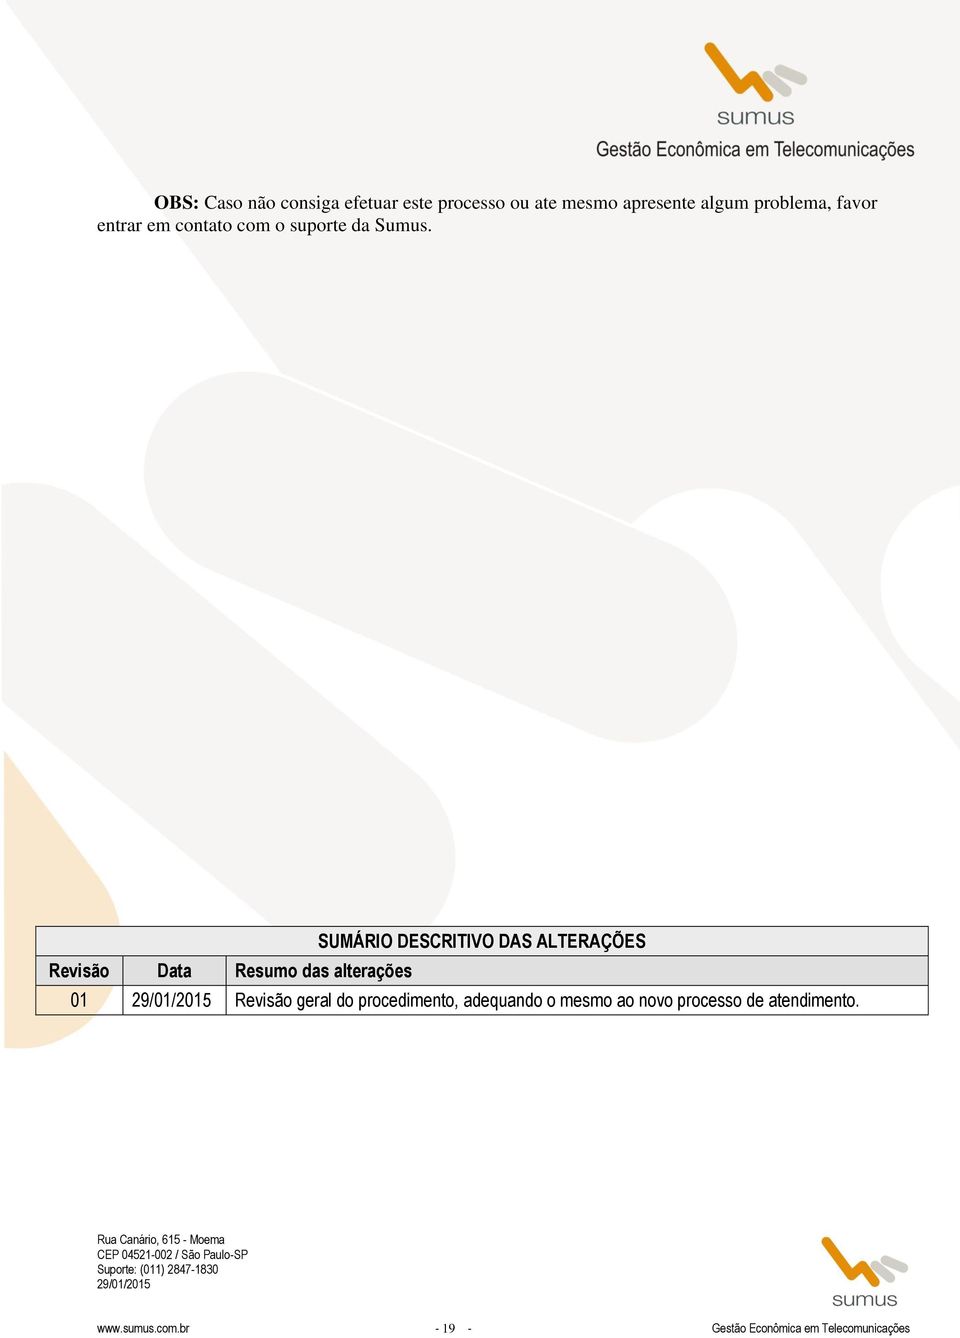 Revisão Data Resumo das alterações SUMÁRIO DESCRITIVO DAS ALTERAÇÕES 01 Revisão geral